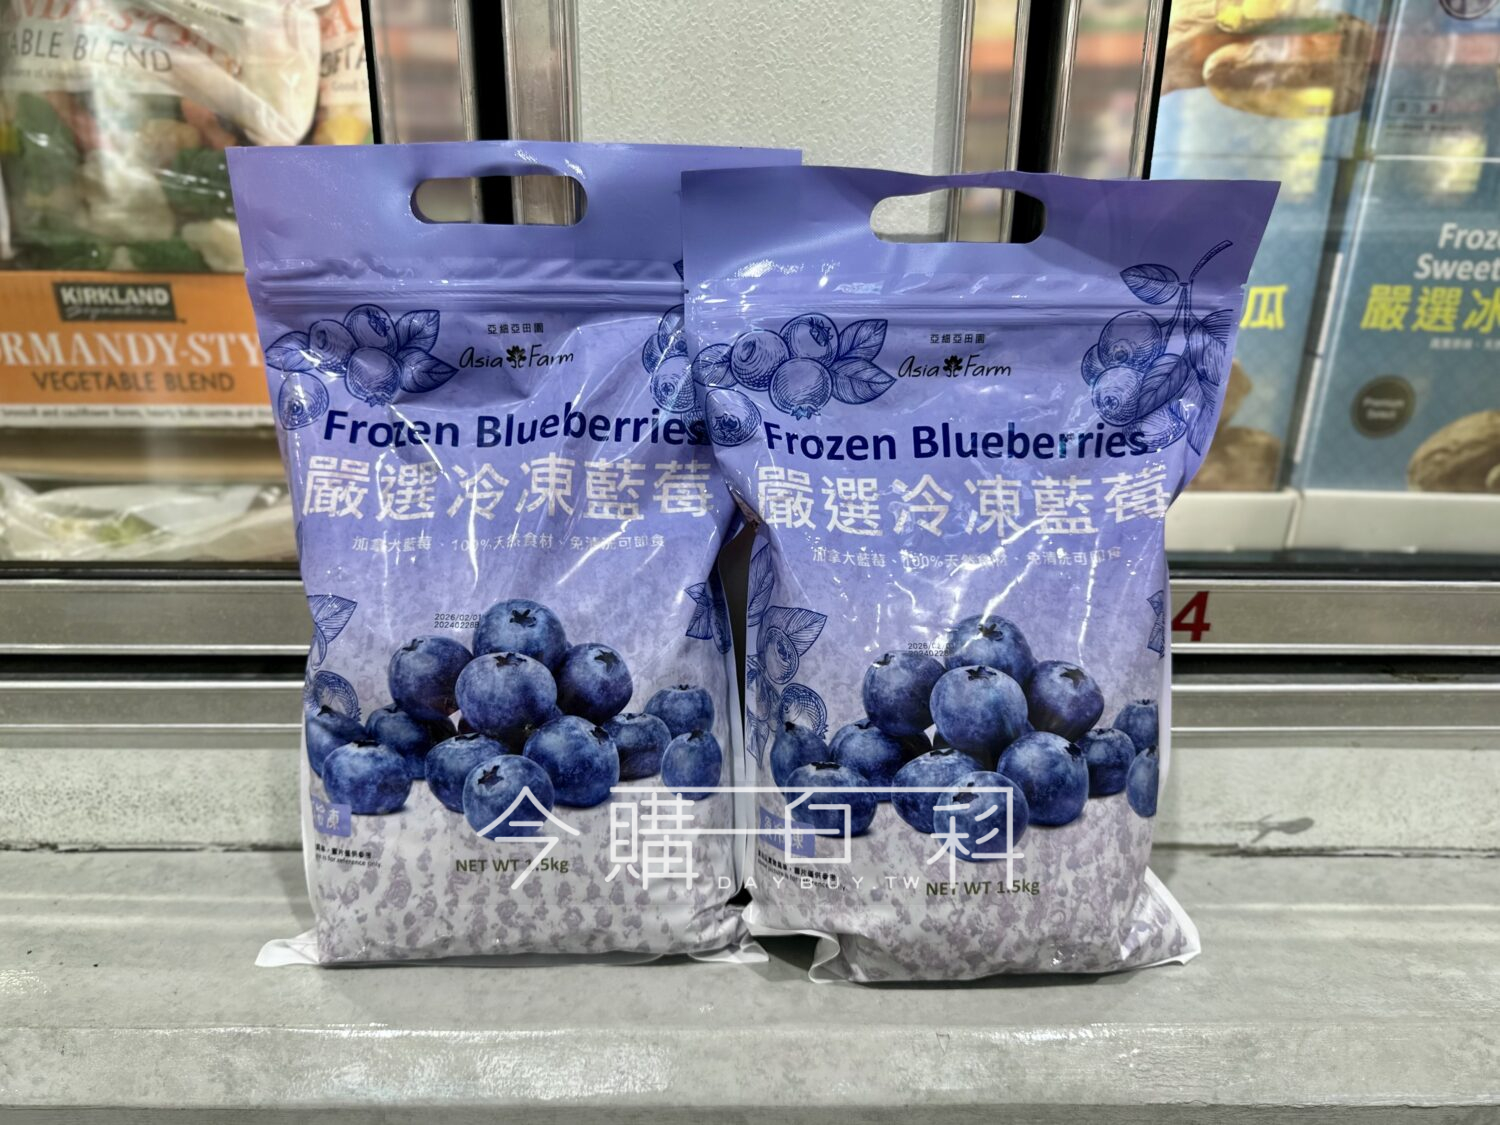 ASIA FARM 亞細亞冷凍藍莓 #766578